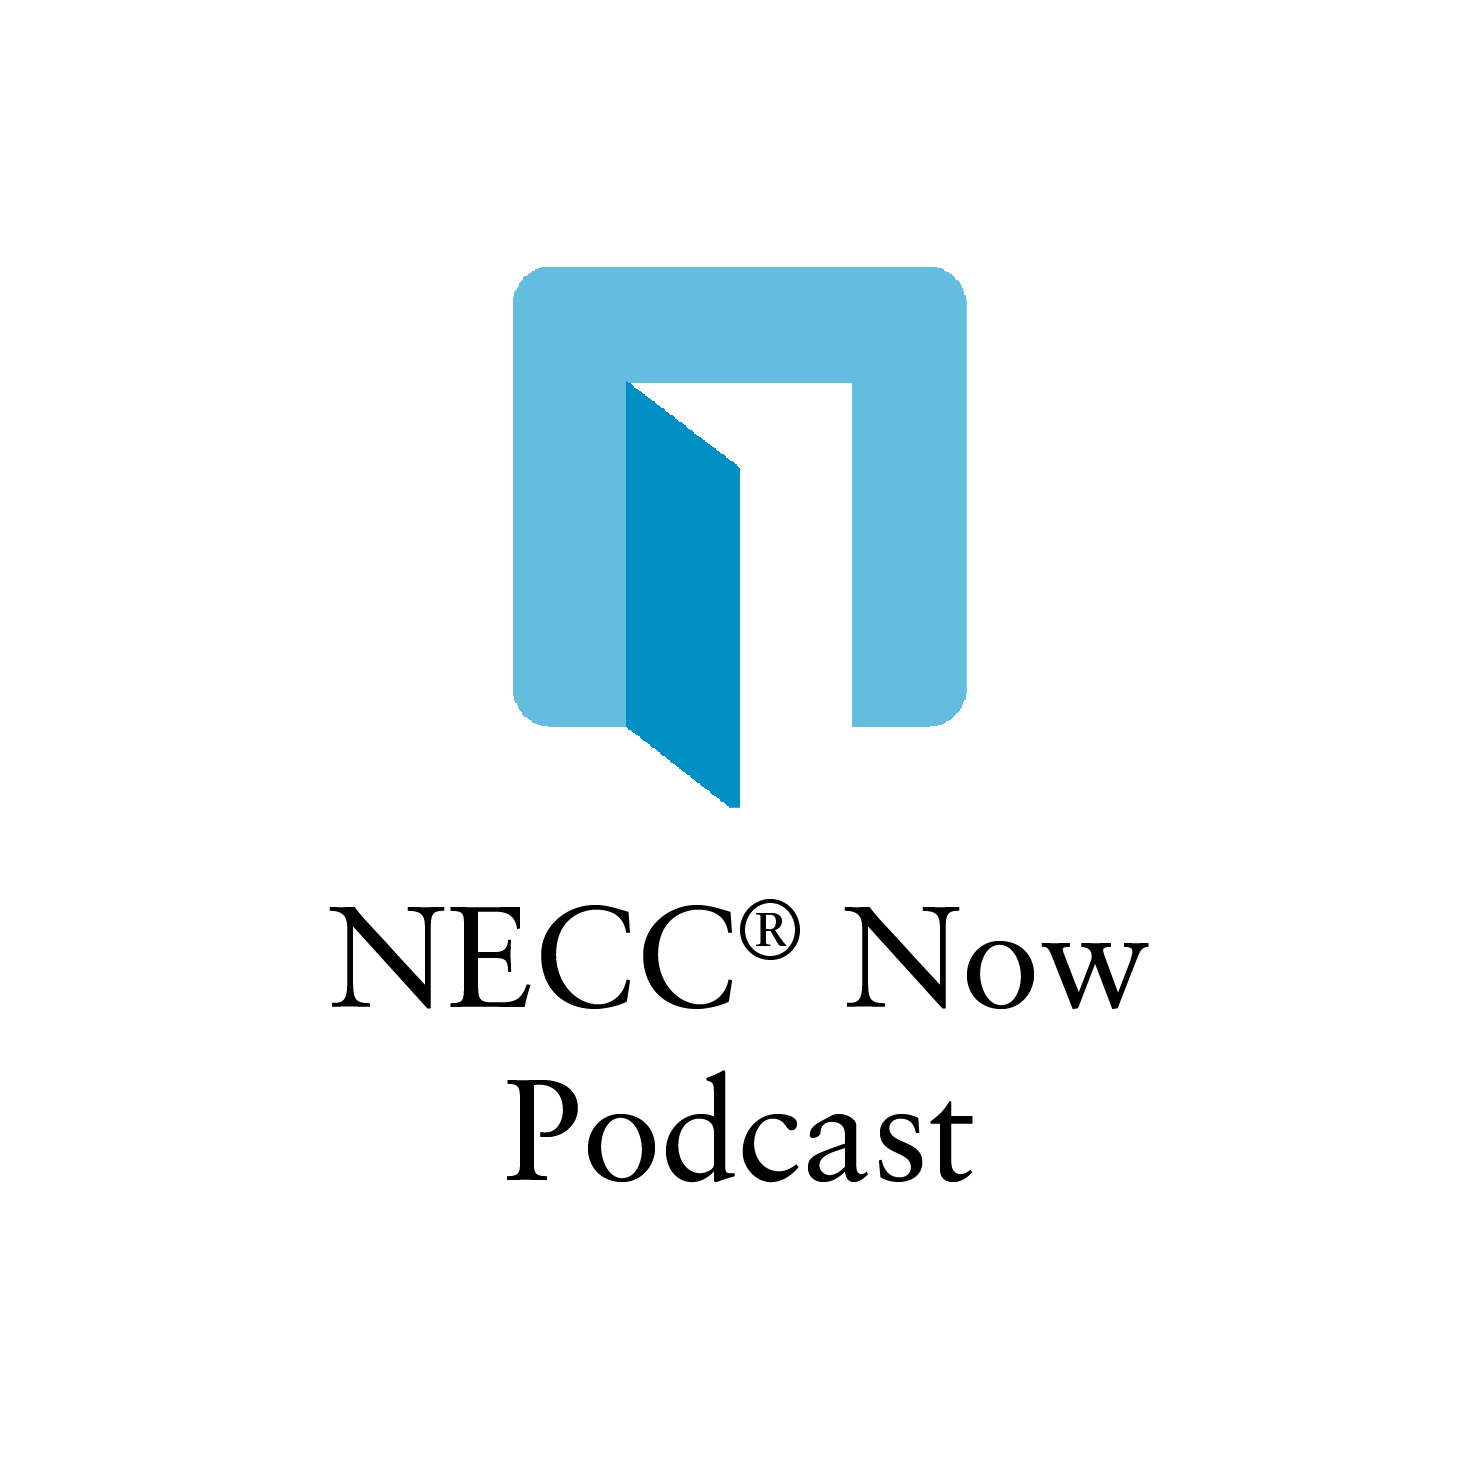 NECC Now Podcast